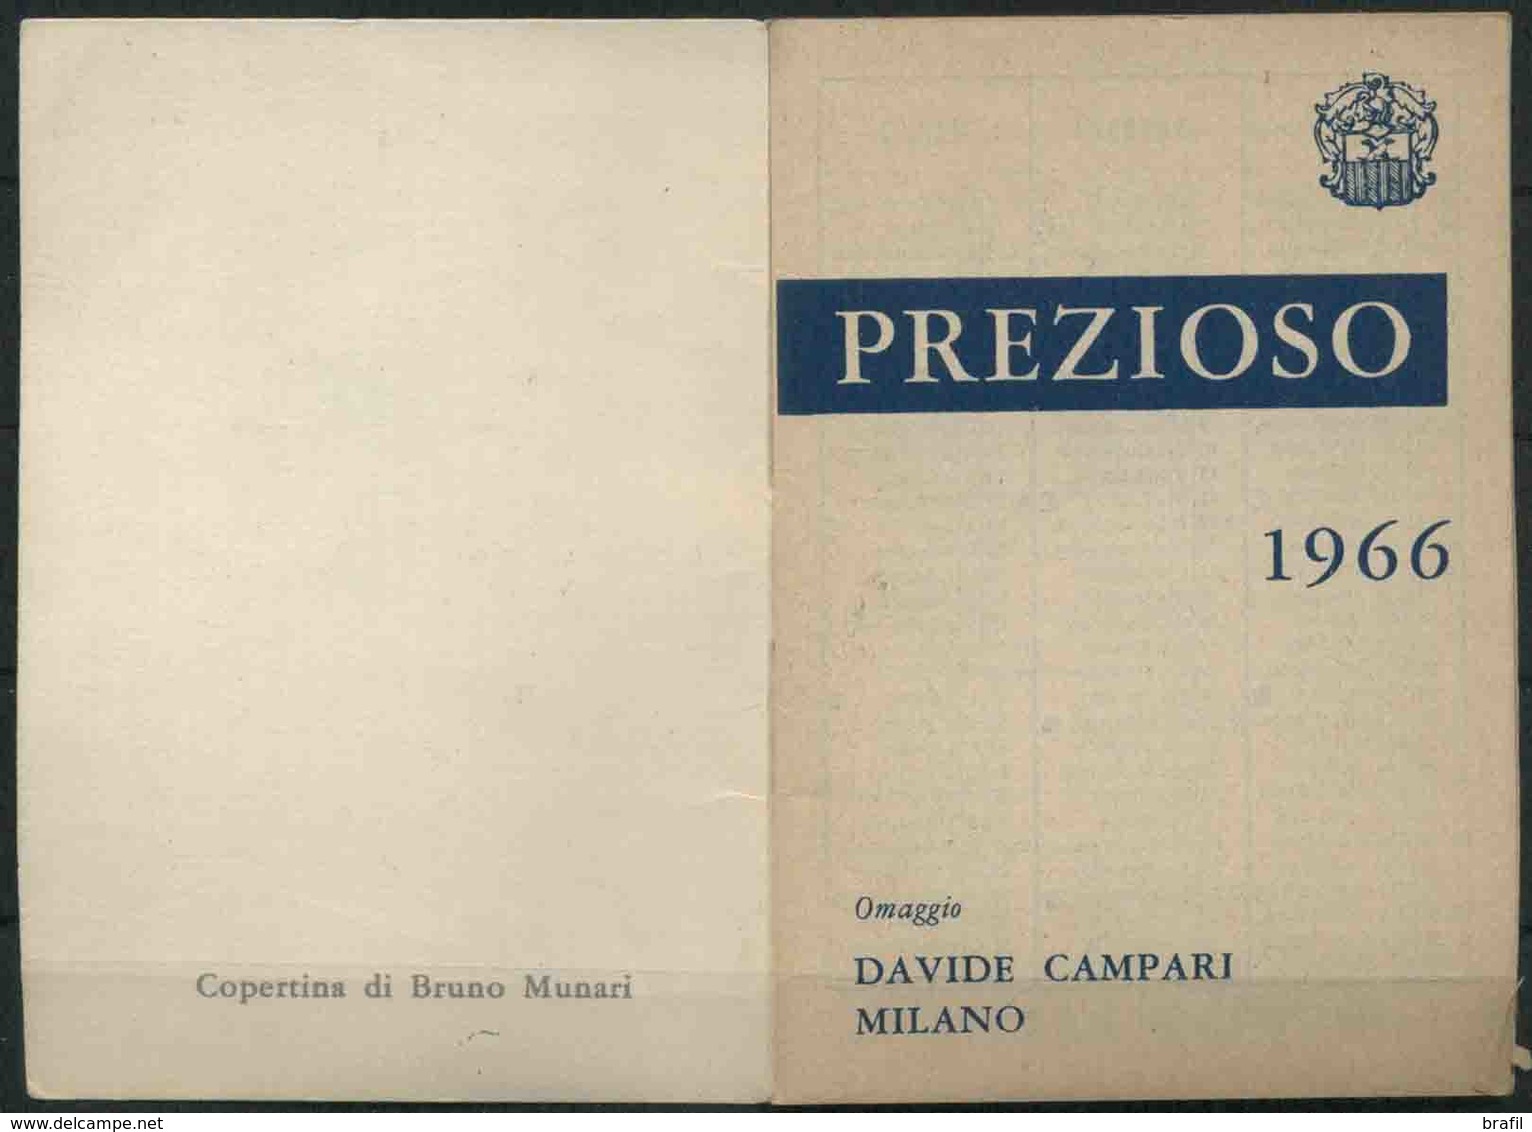 1966 Calendarietto Campari, Copertina  Di Bruno Munari Nuovo Ottime Condizioni - Formato Piccolo : 1961-70